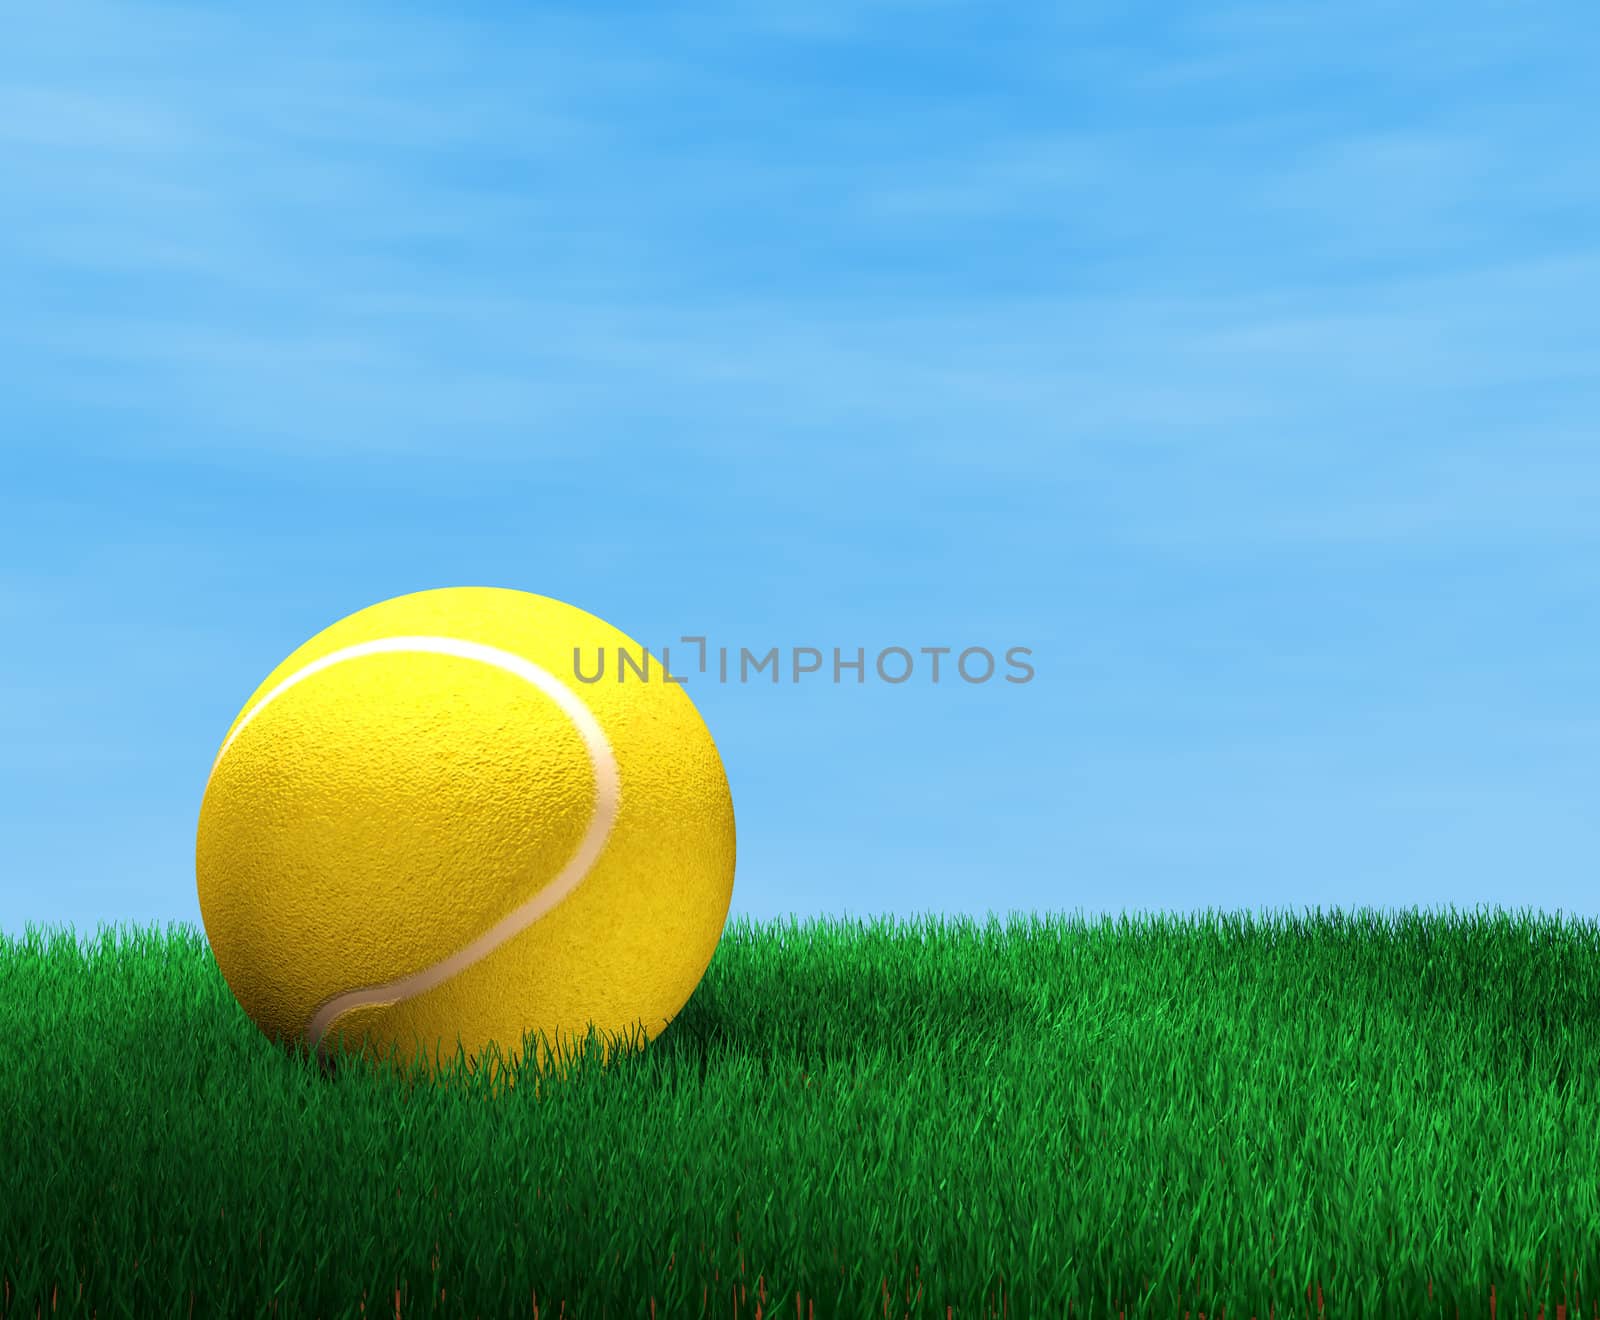 Tennis ball by carloscastilla